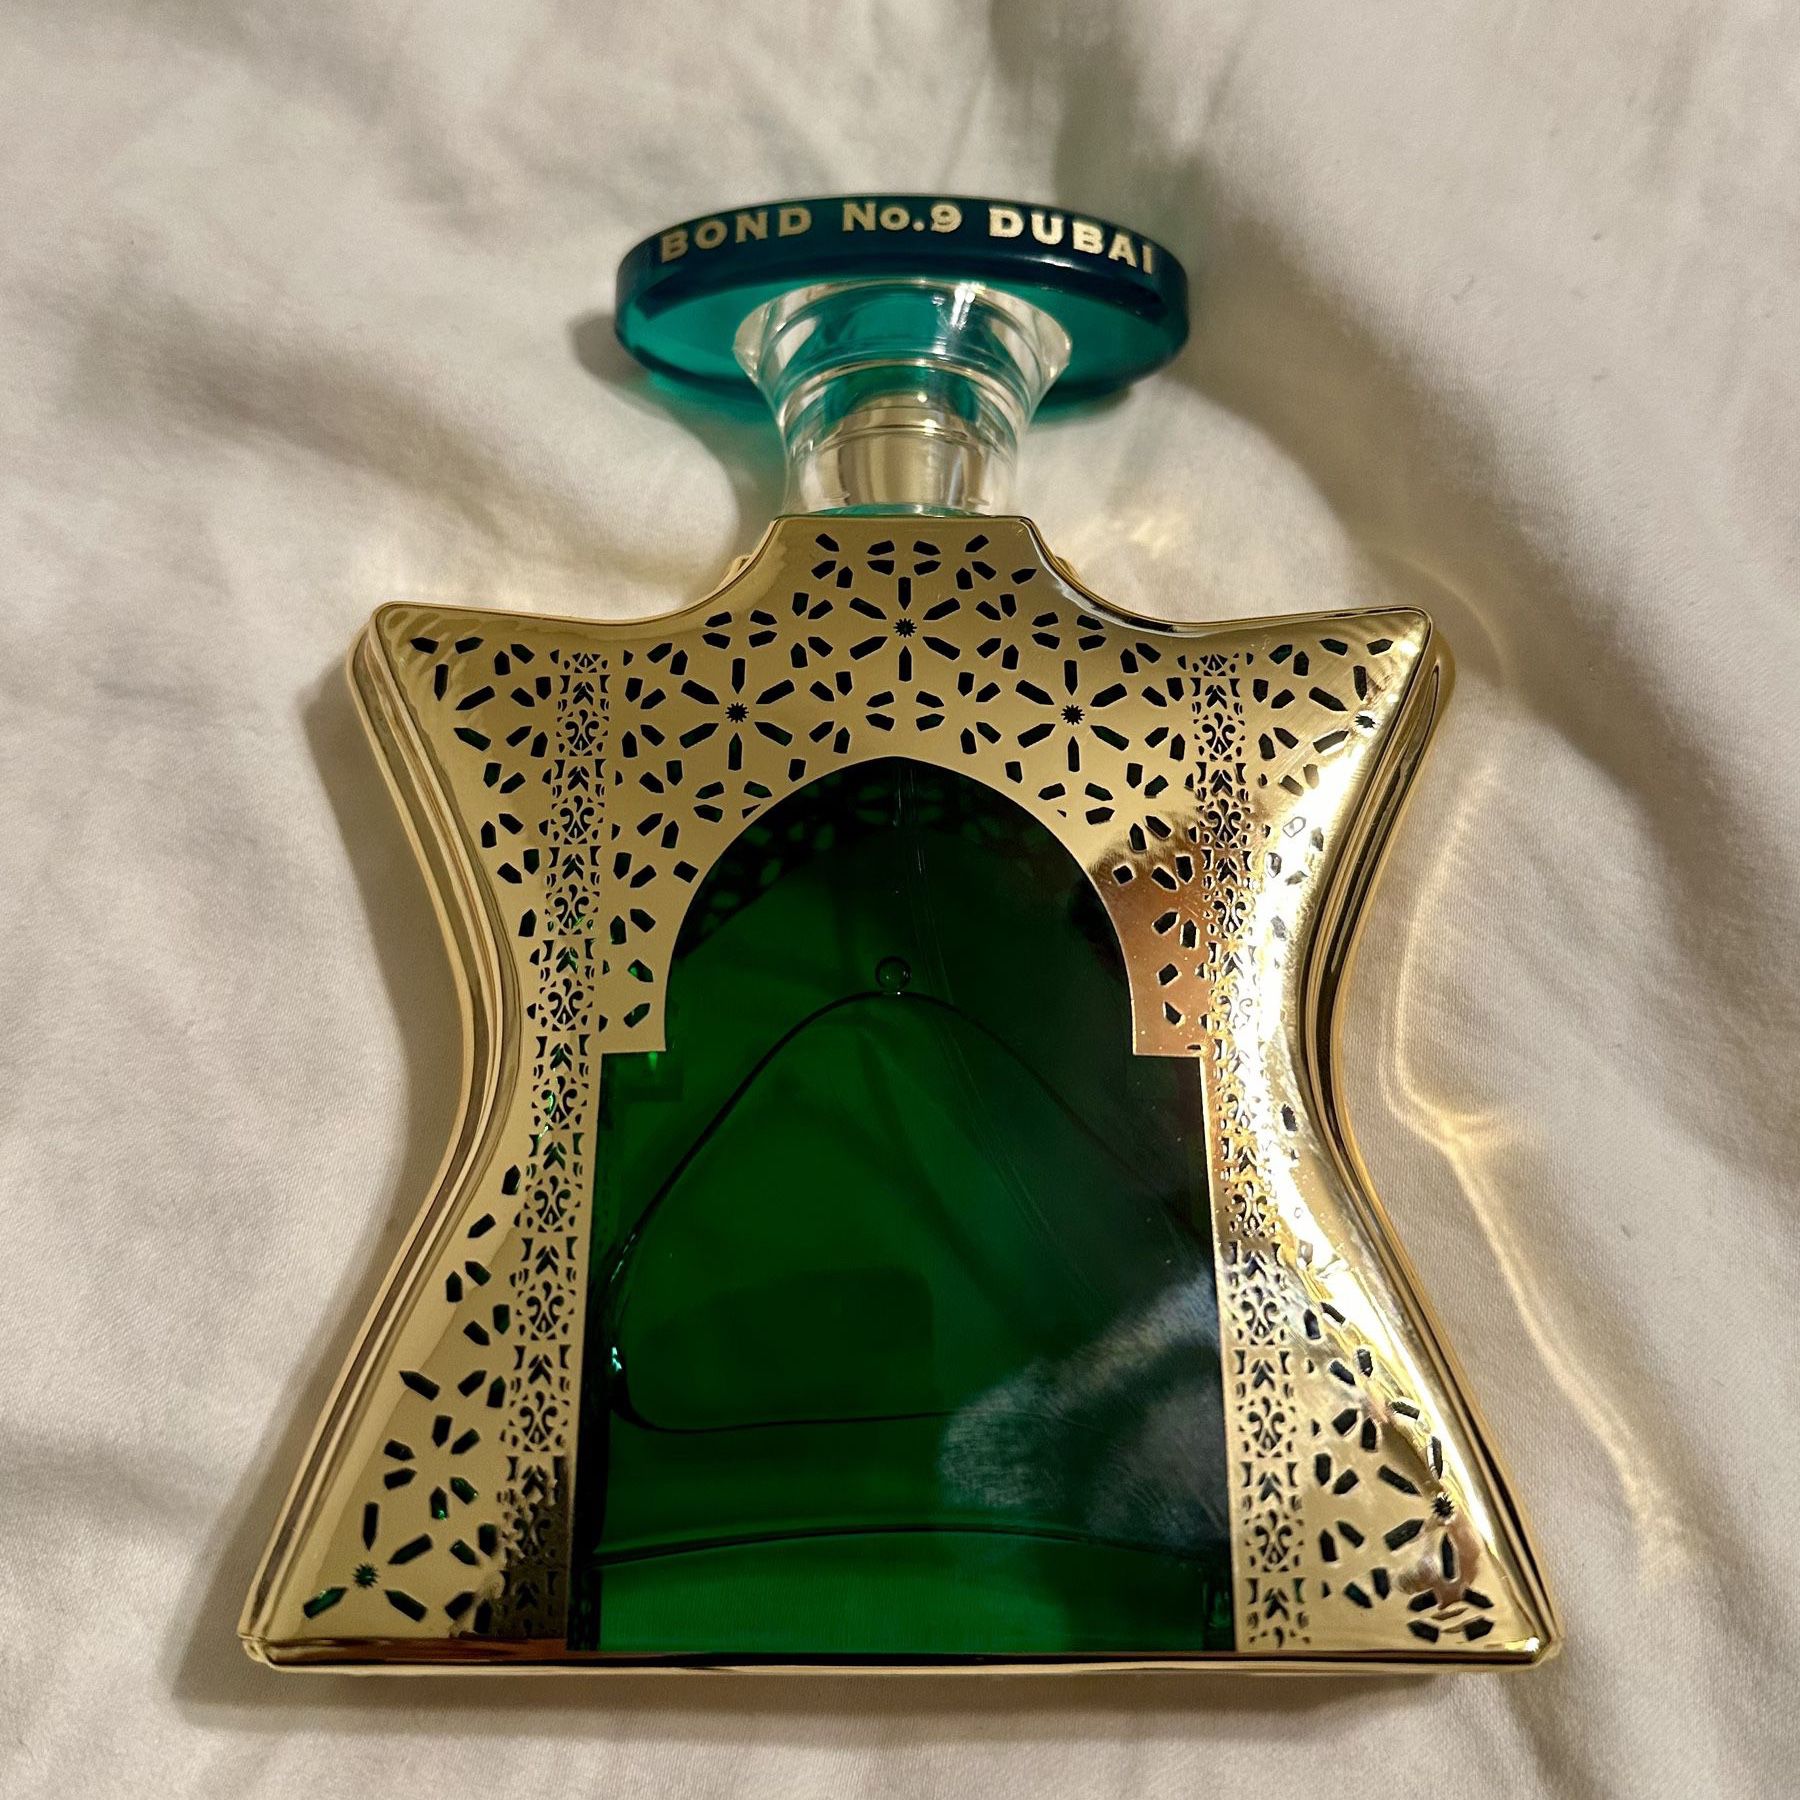 Bond No 9 Dubai Emerald *New*